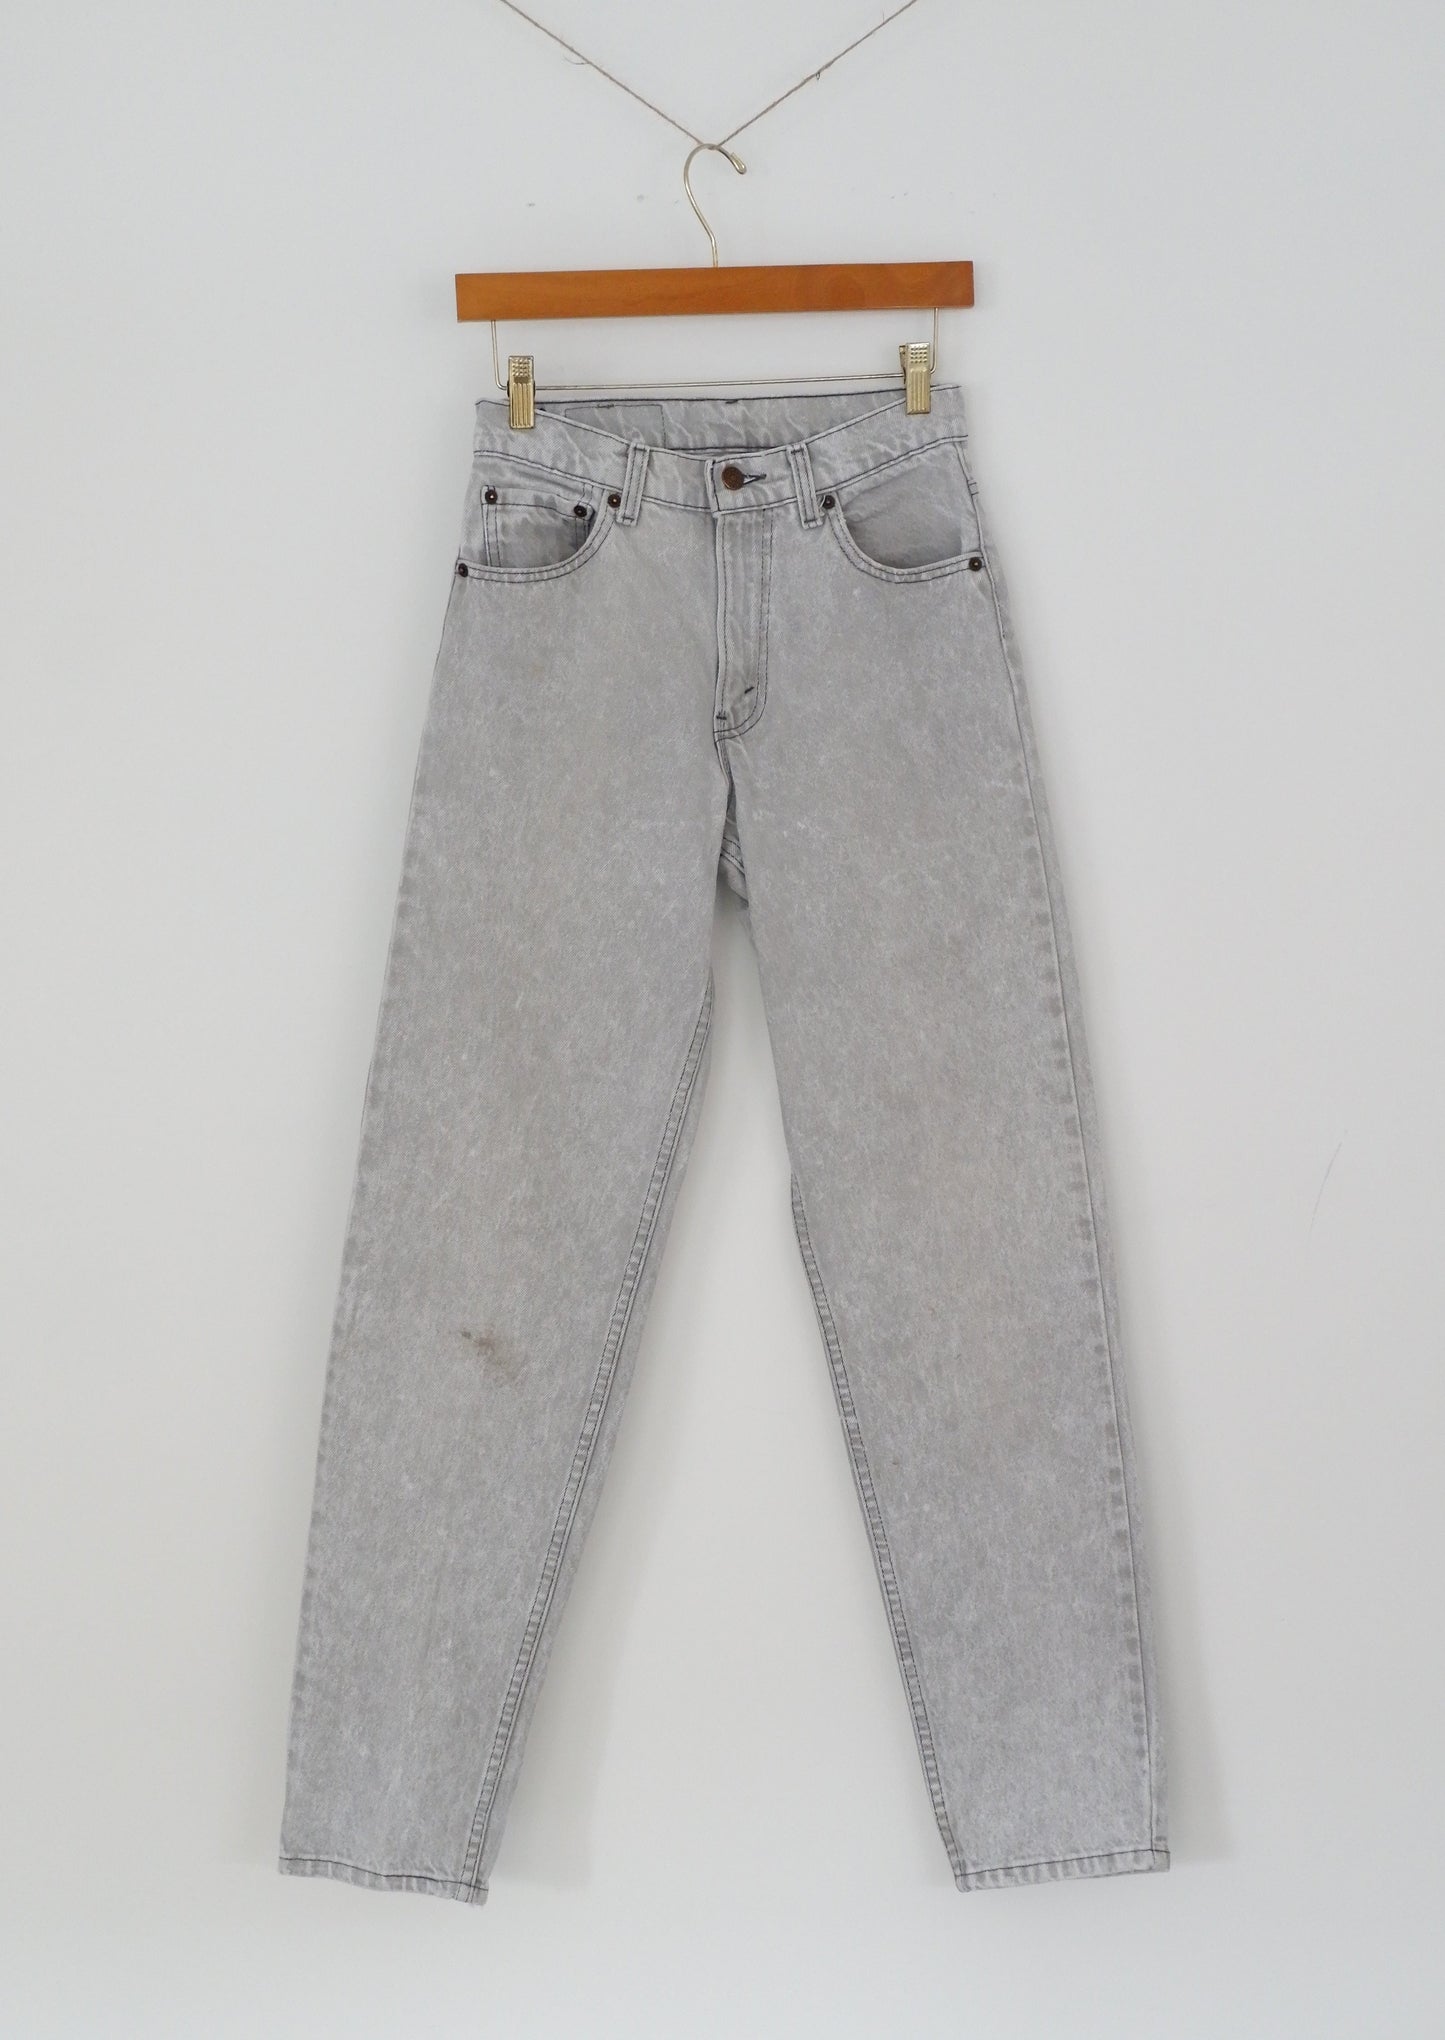 Levis Vintage 550 Grey Acid Wash Jeans - 26